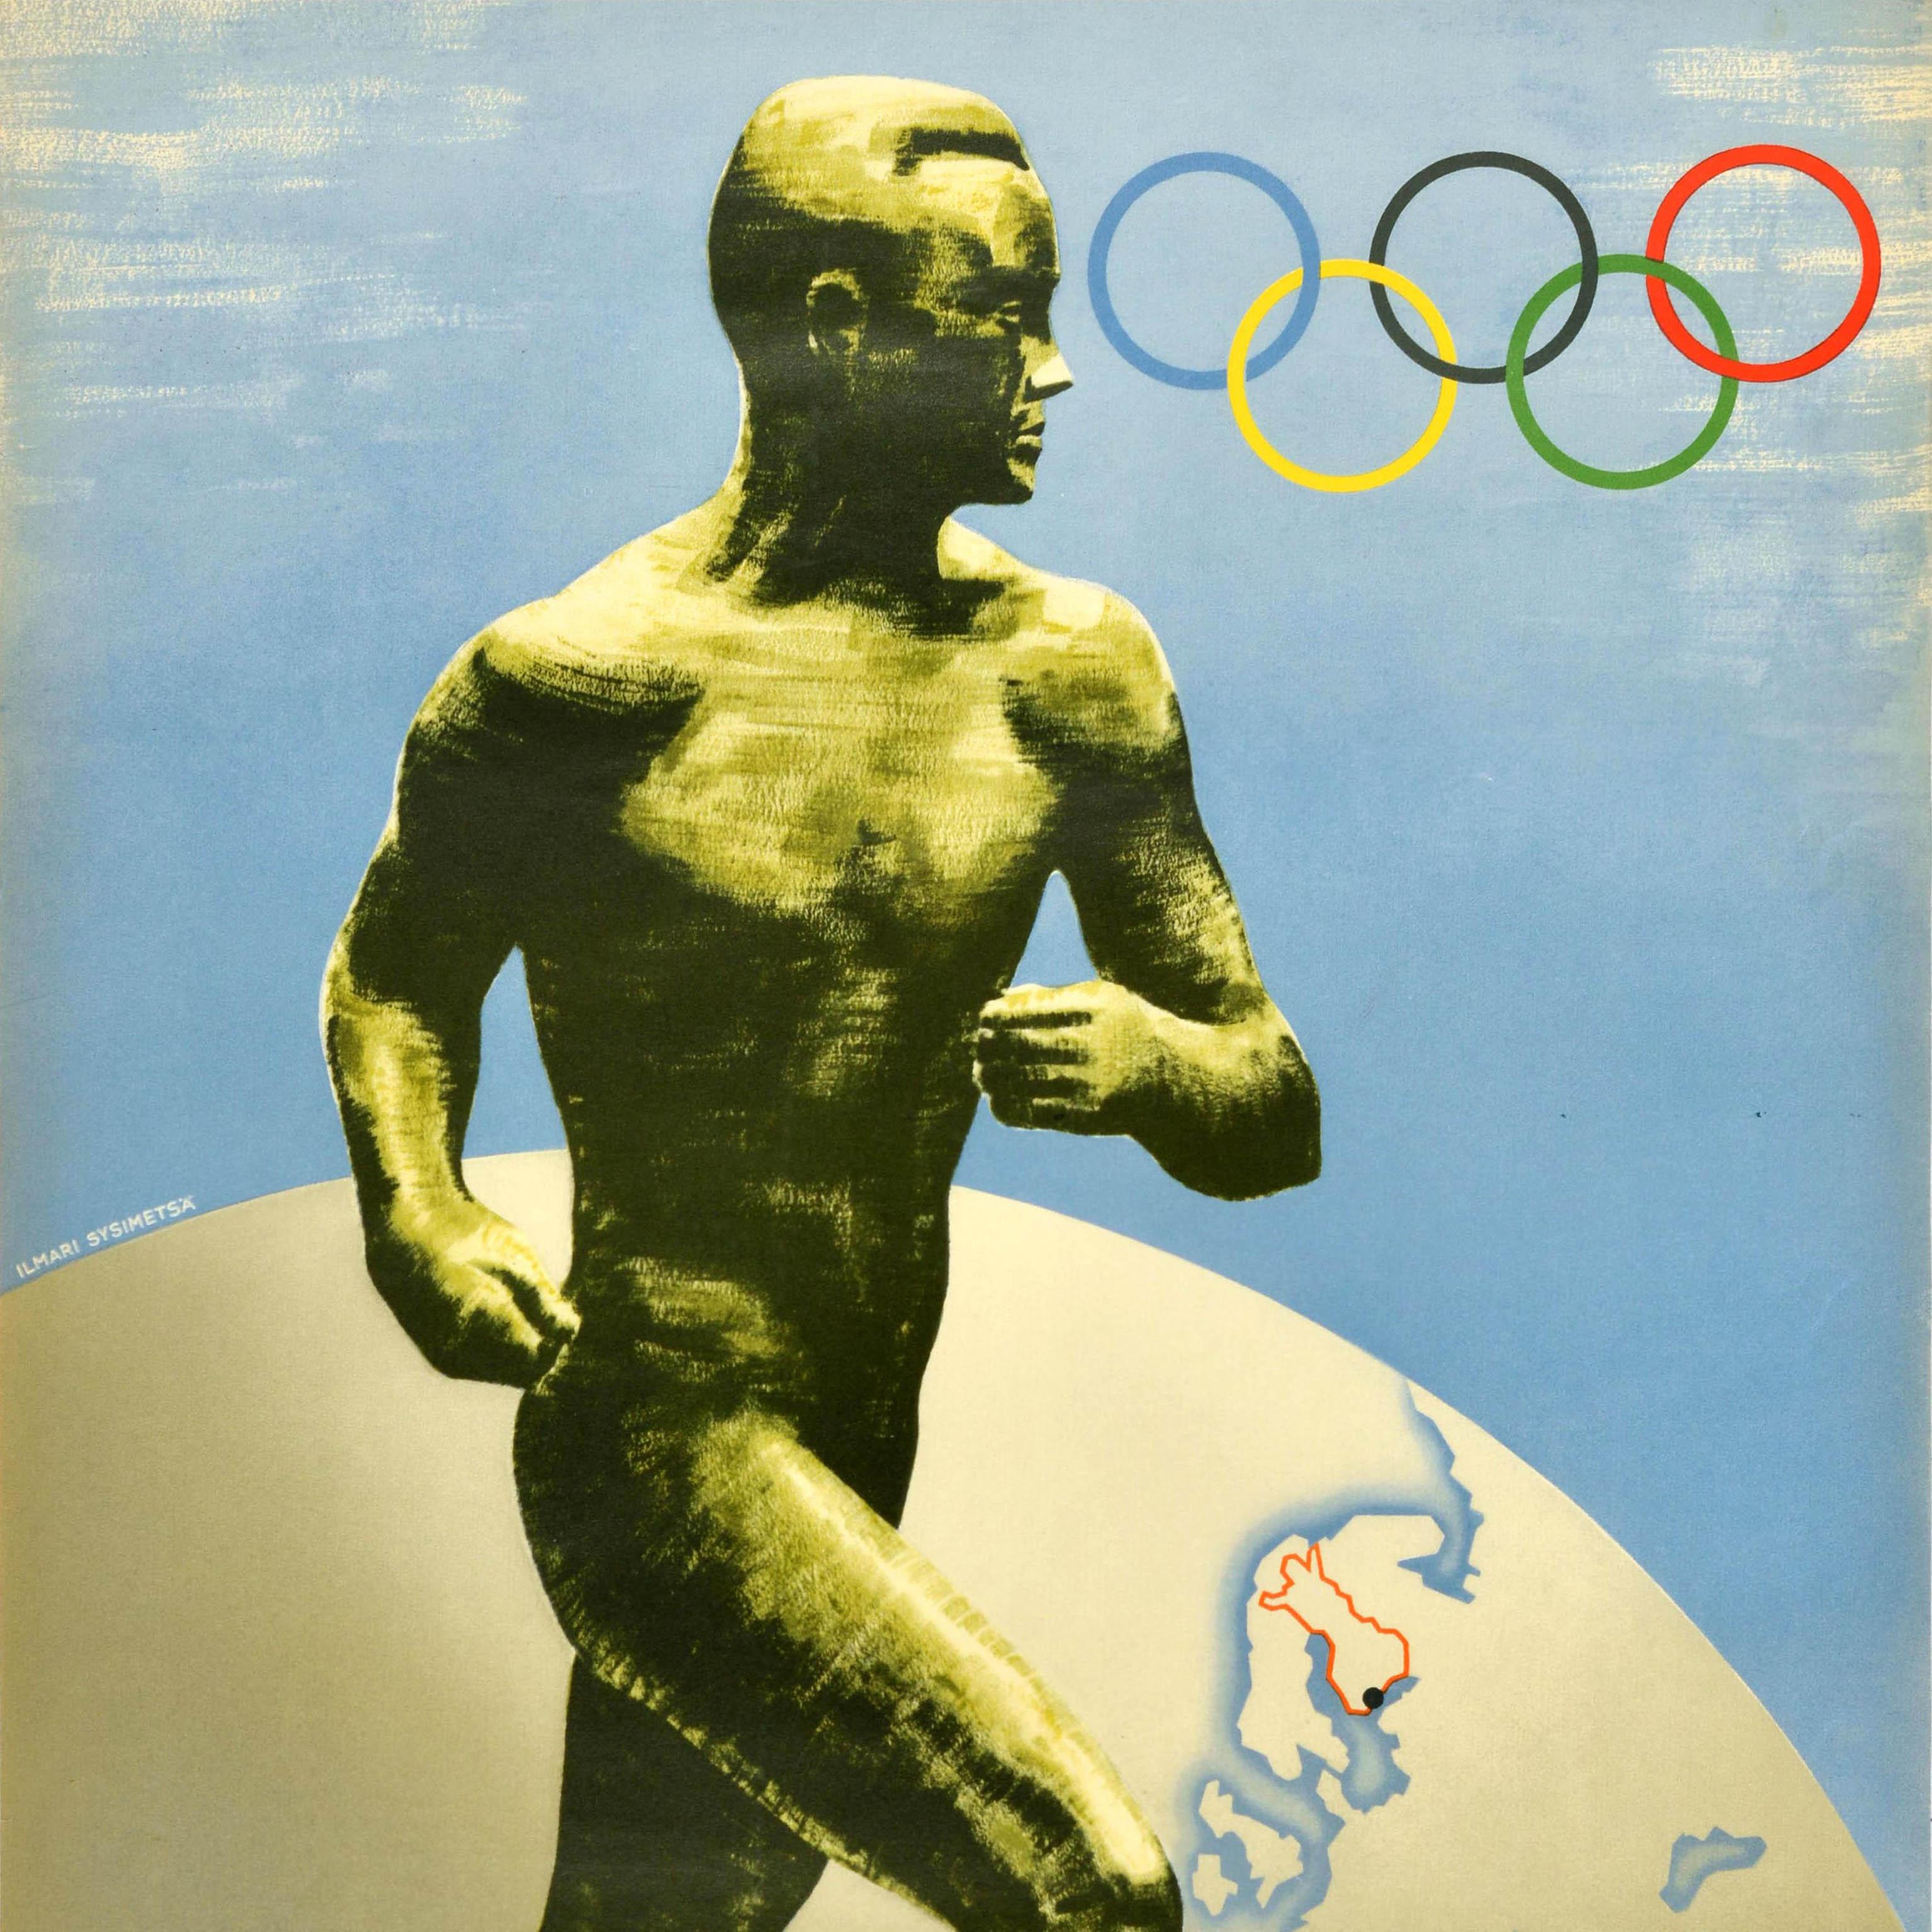 Affiche sportive originale pour les Jeux Olympiques d'été de 1940 à Helsinki (Finlande). L'image dynamique représente la sculpture d'un athlète courant devant un globe terrestre représentant la Finlande avec les anneaux olympiques au-dessus et le